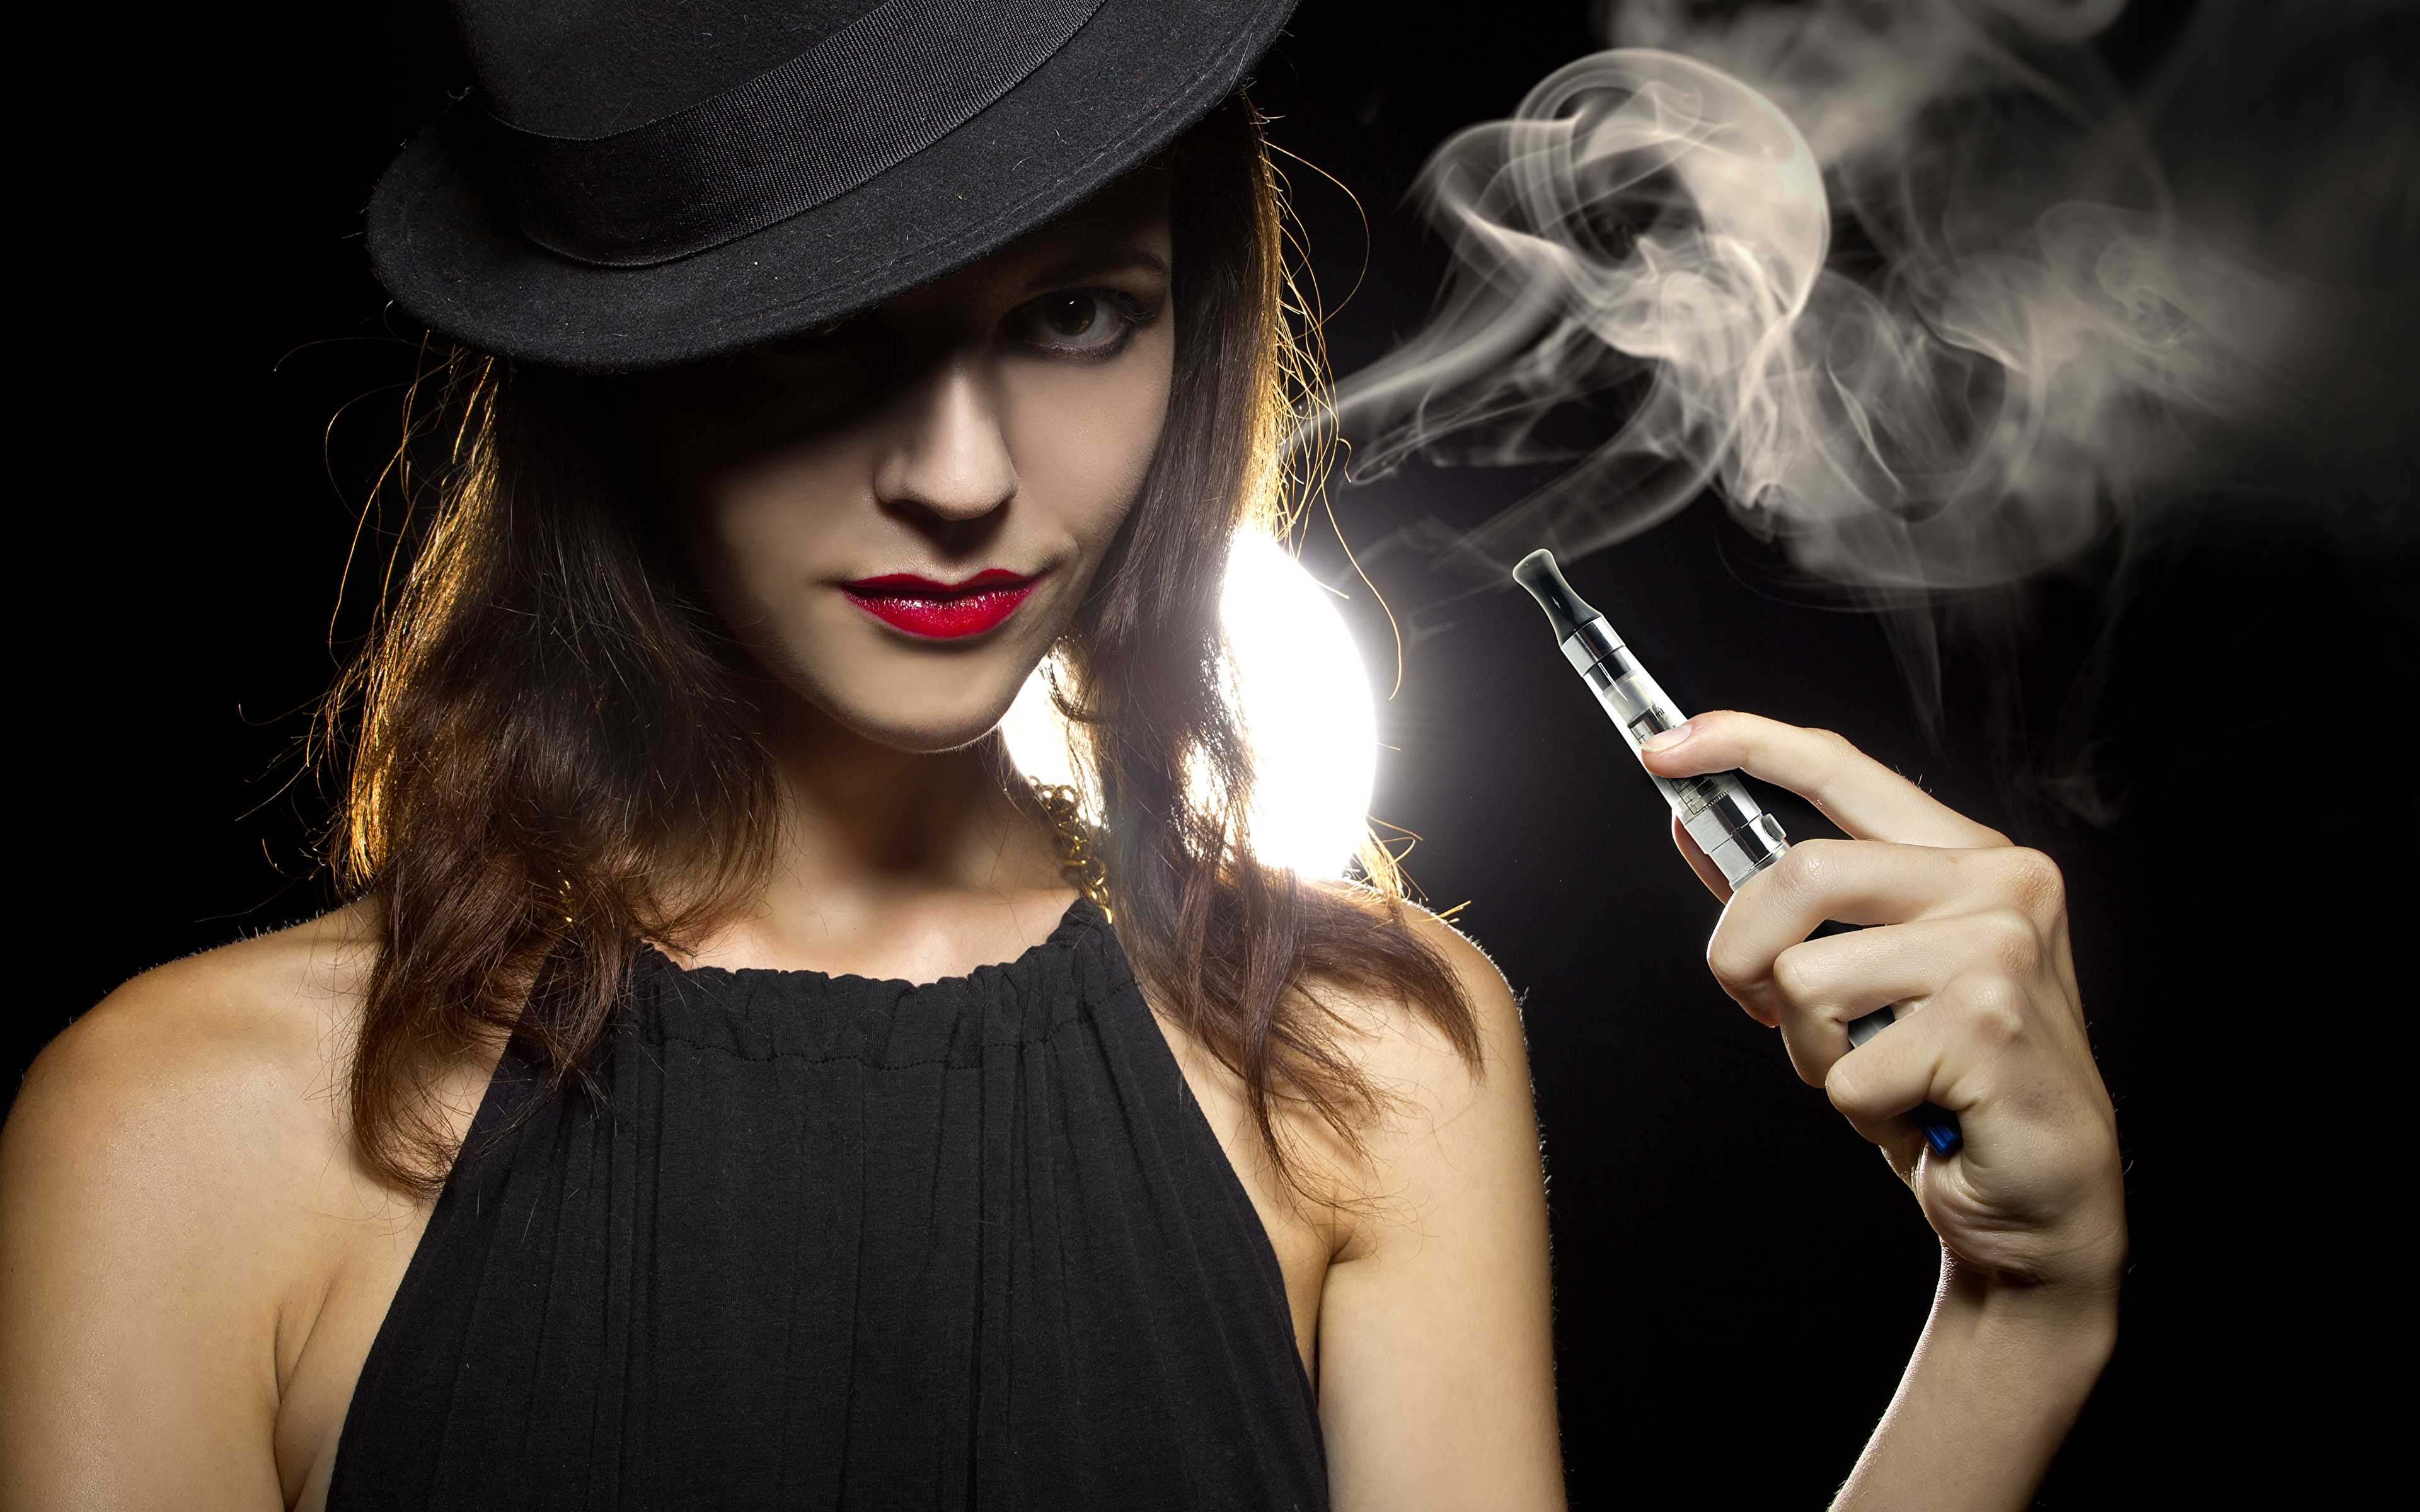 壁紙 3840x2400 帽子 茶色の髪の女性 煙 手 電子たばこ 少女 ダウンロード 写真